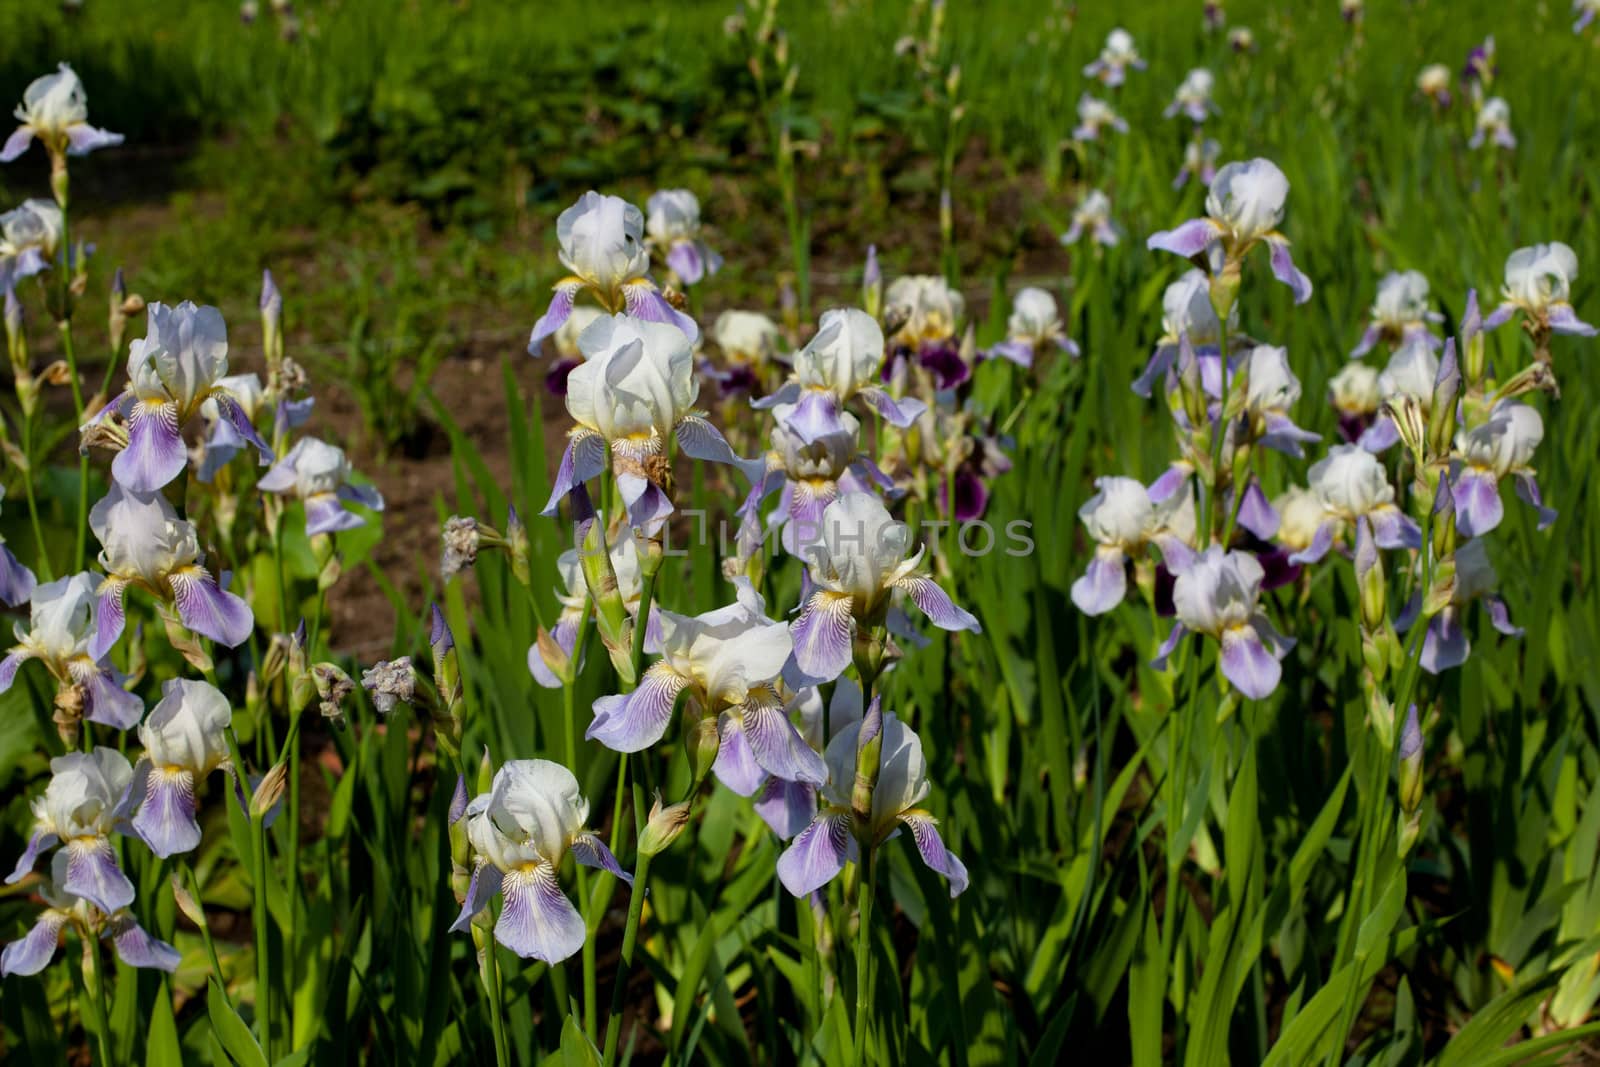 Purple irises by foaloce